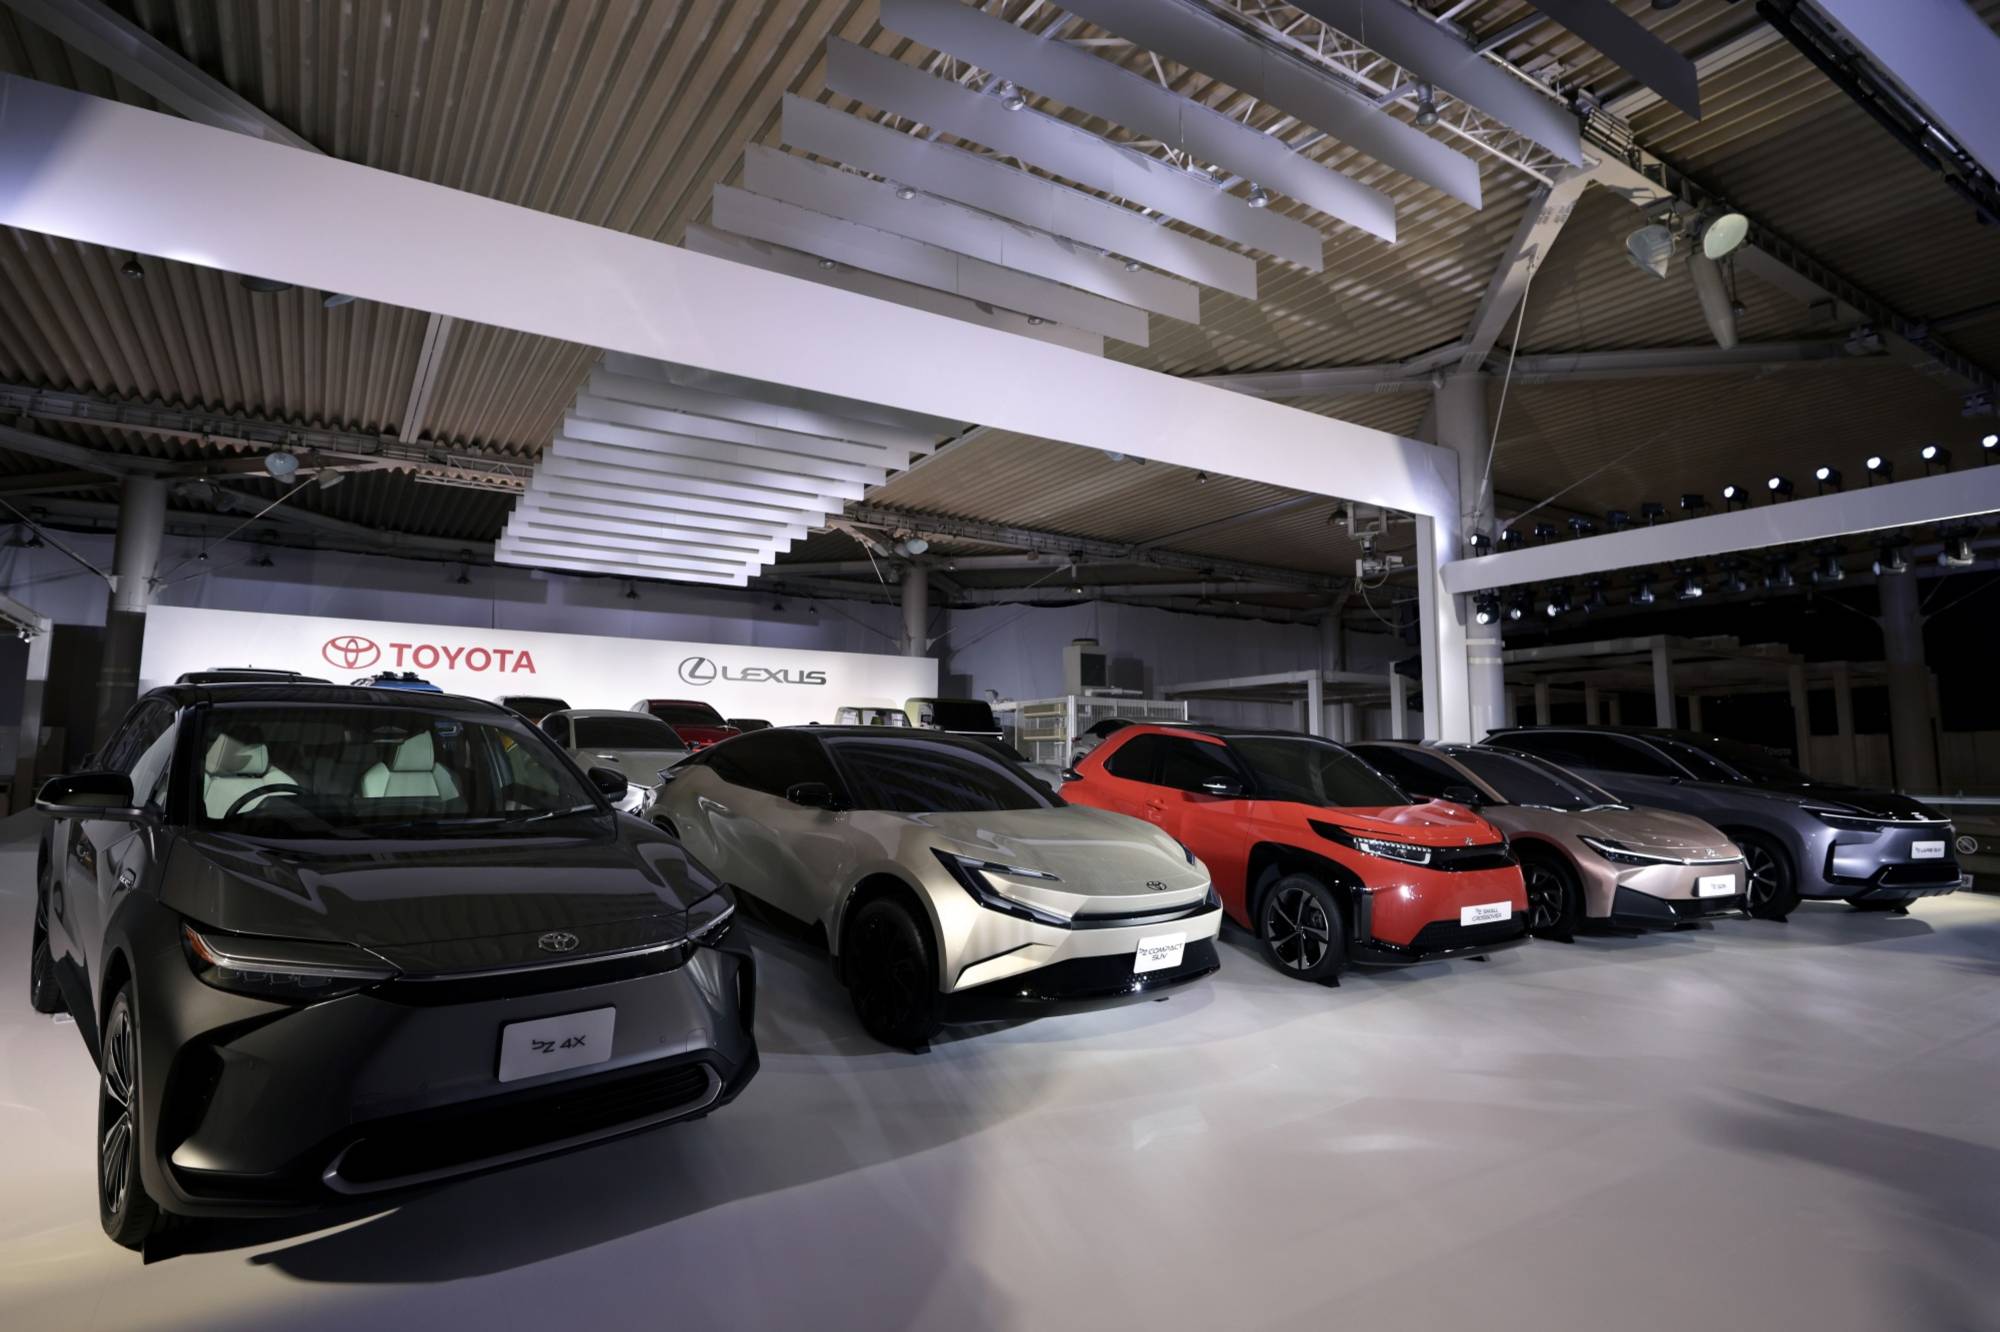 Giám đốc khoa học của Toyota:  ‘Xe điện gây hại cho cả người dùng và môi trường’ - Ảnh 2.